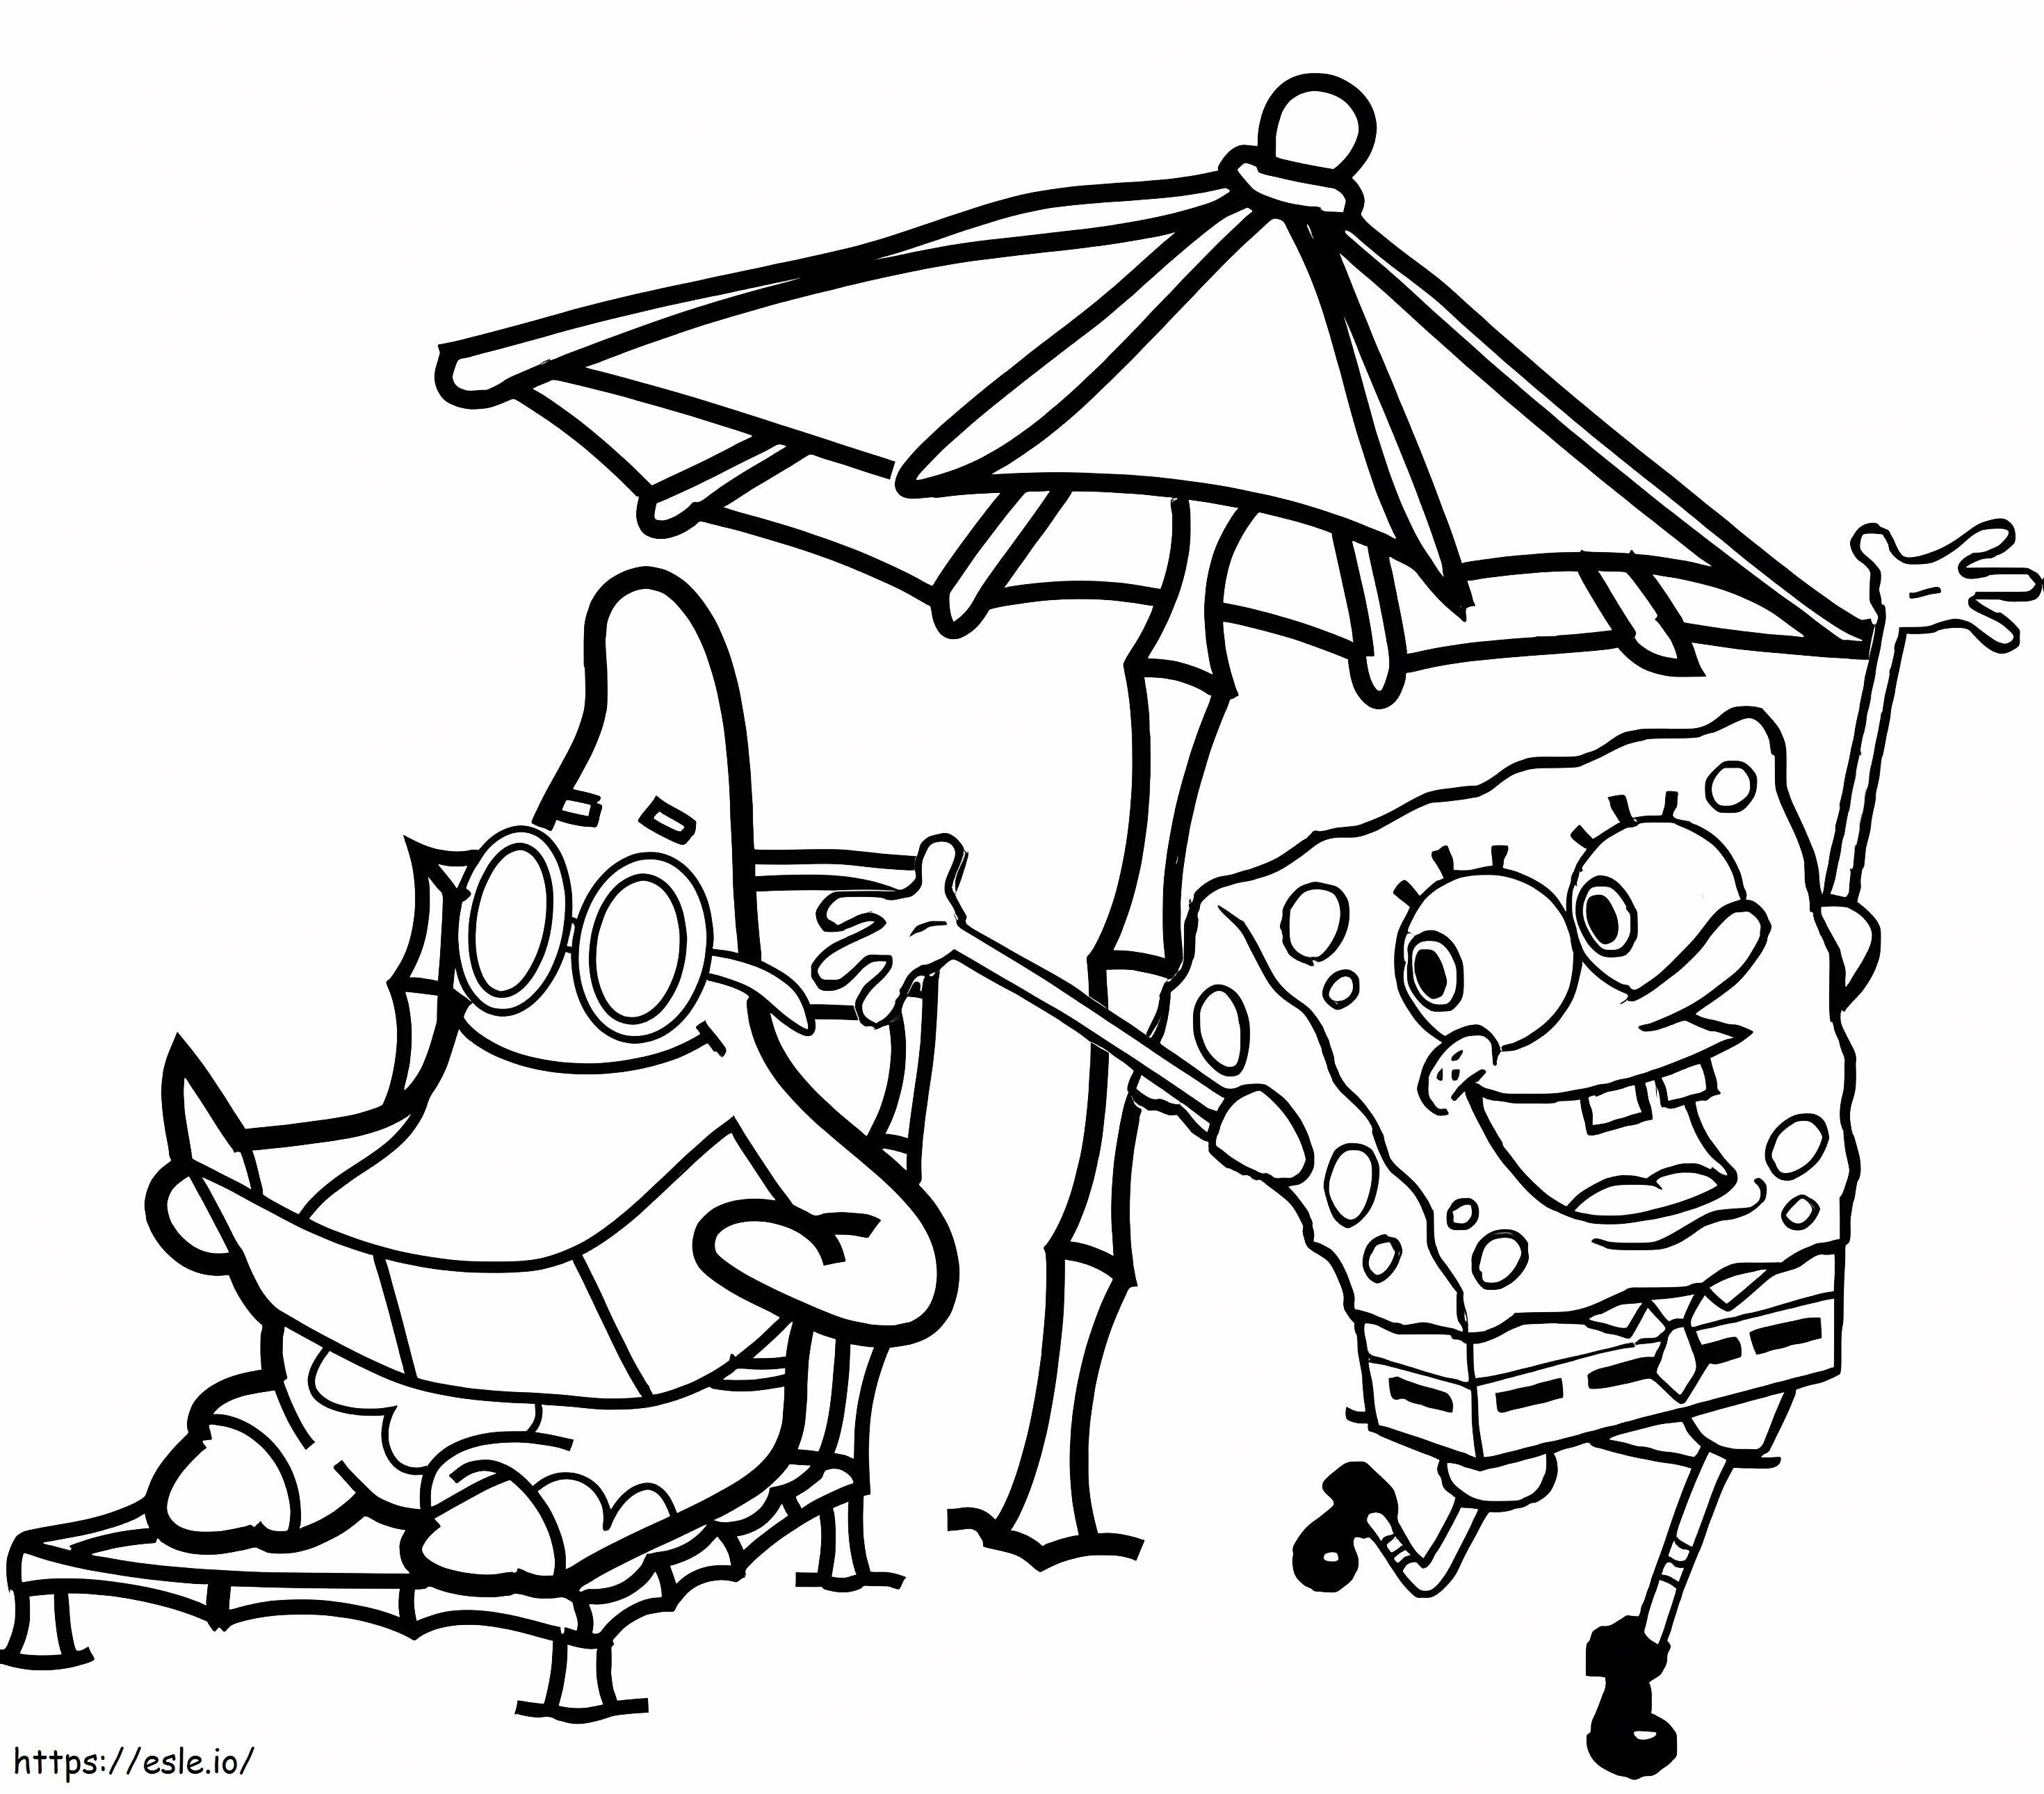 Patrick Star e SpongeBob sulla spiaggia da colorare